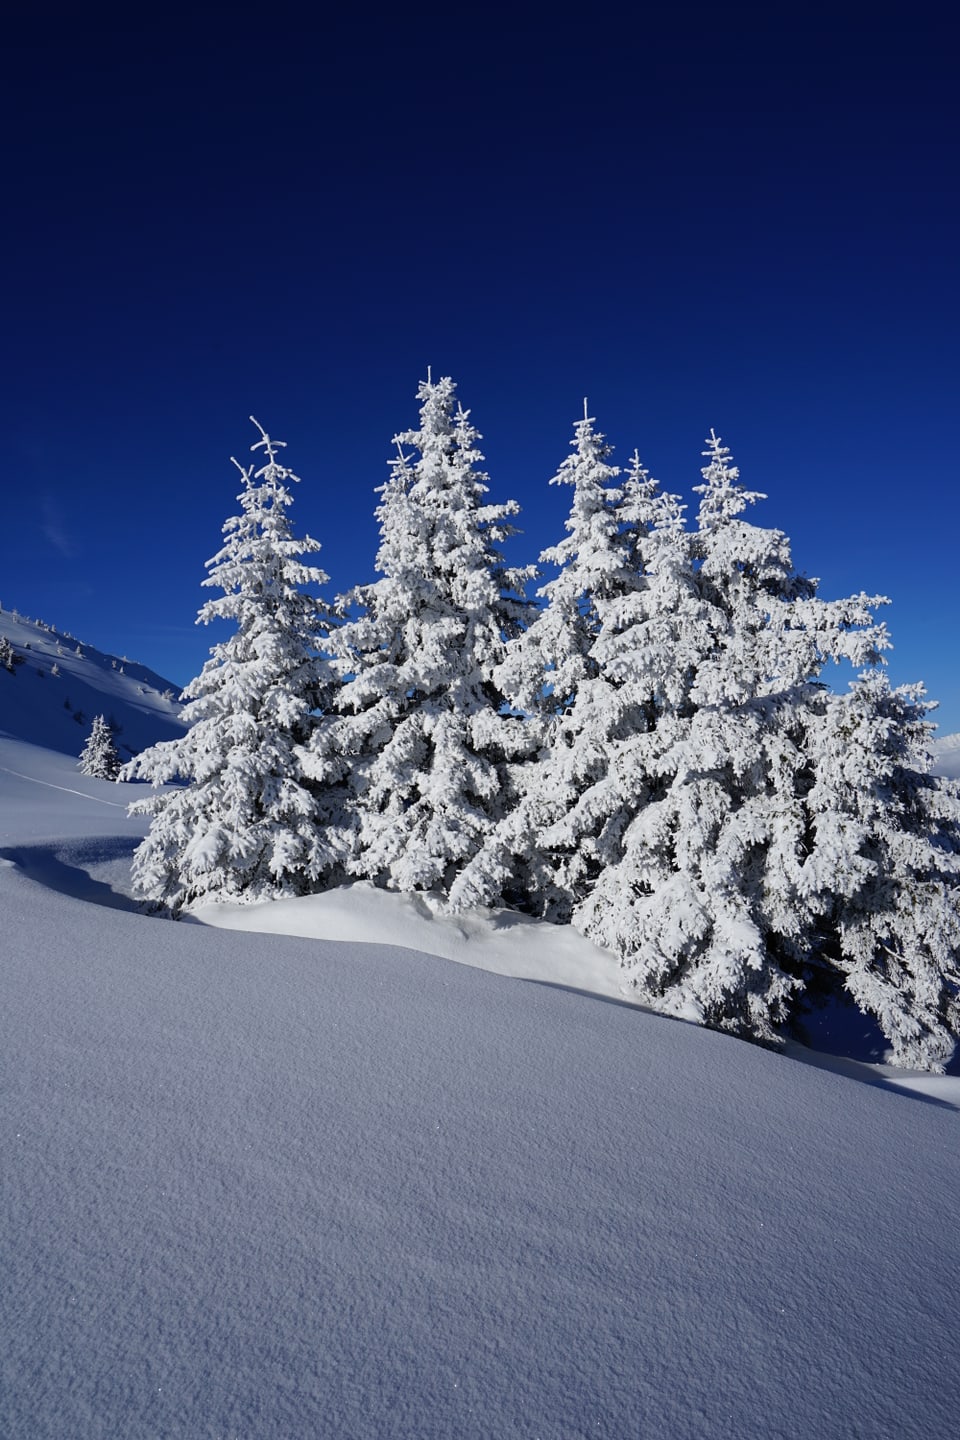 Bäume mit Schnee, zum Scheeengel inspirierende Landschaften, NICE!